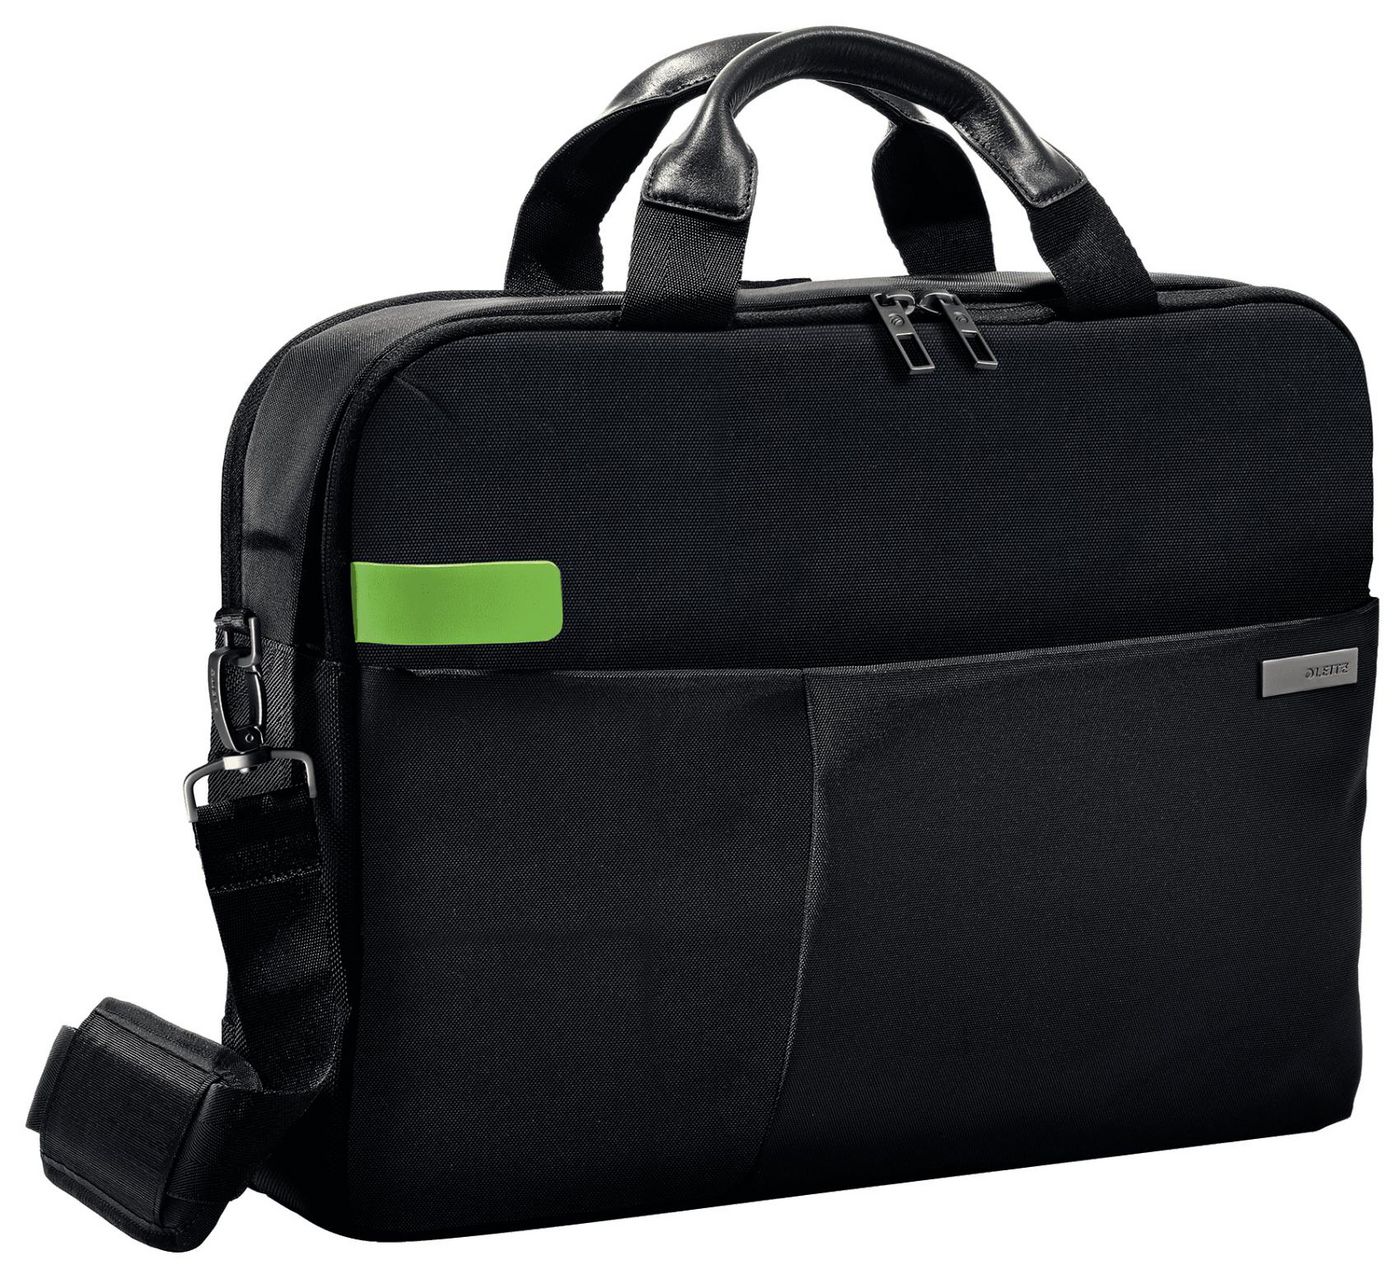 Bag for Laptop 15.6"